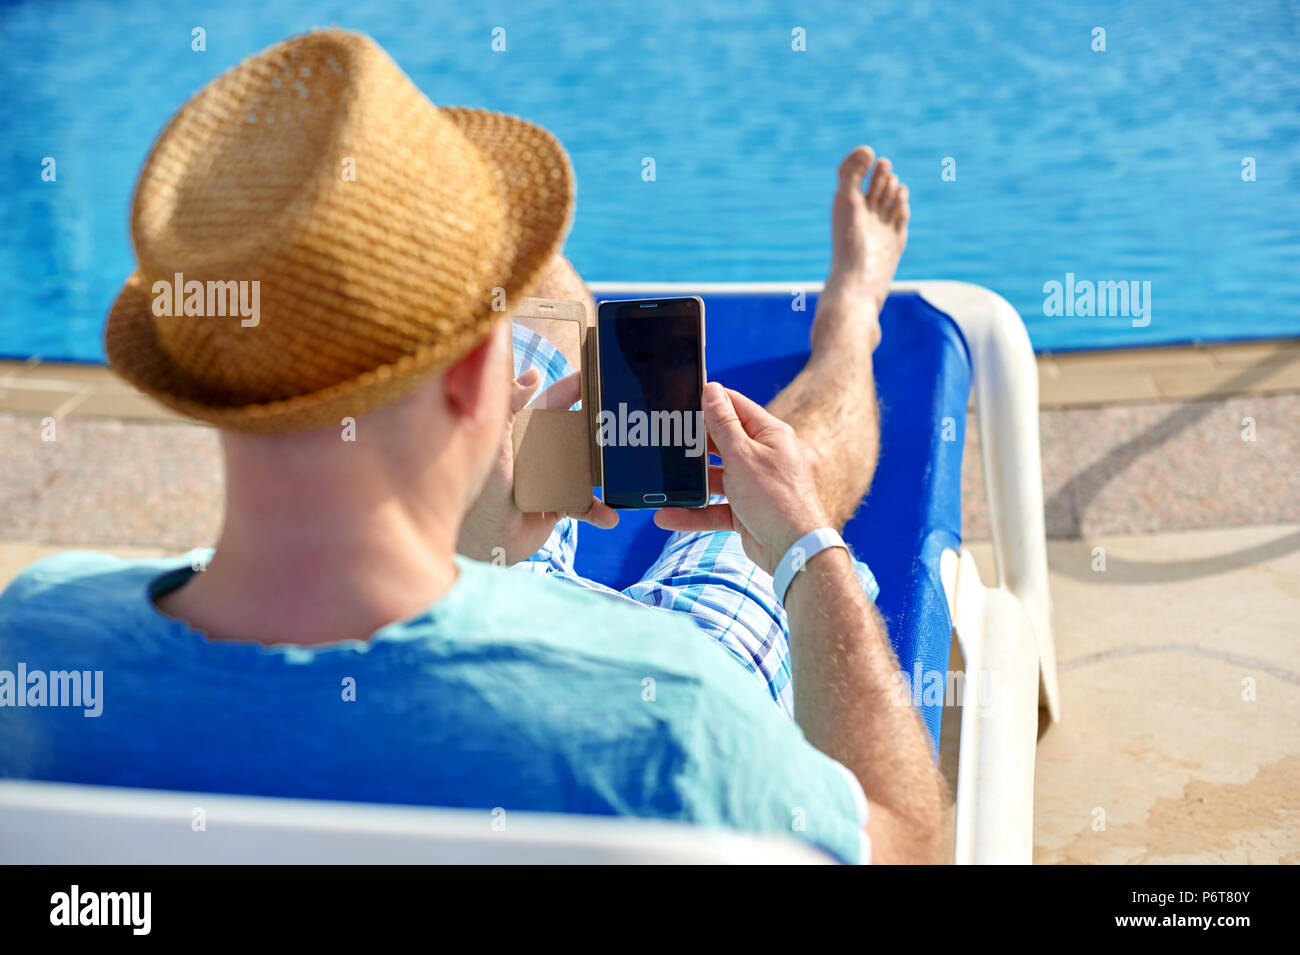 L'homme à l'aide de téléphone mobile en vacances au bord de la piscine dans l'hôtel, concept d'un indépendant travaillant pour lui-même en vacances et voyage Banque D'Images